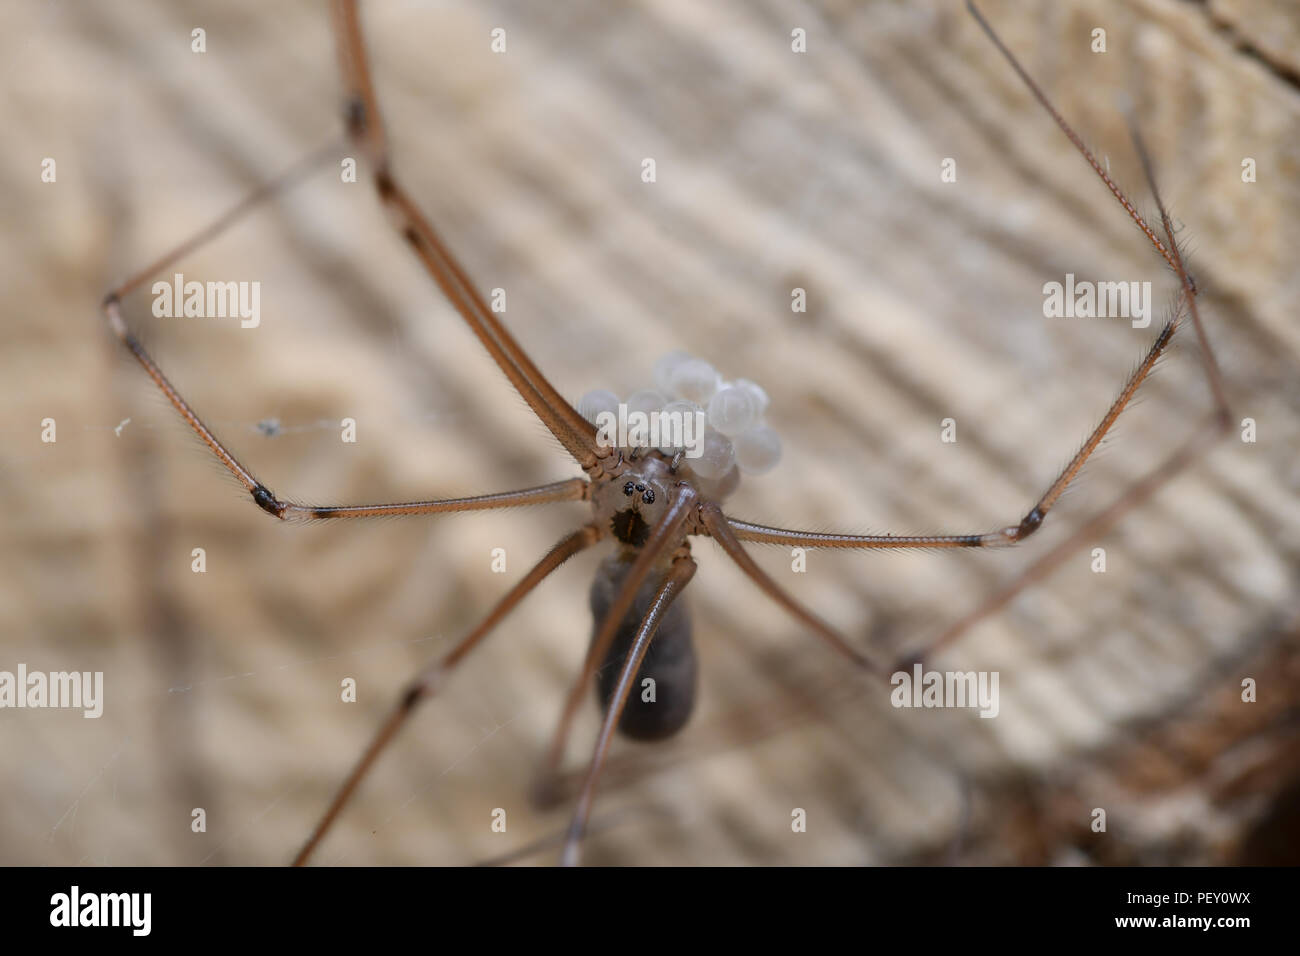 La araña de patas largas vive en las casas, en zonas templadas y secas, en techos y esquinas. Es una gran cazadora de other arañas, insectos, mosquito Foto de stock